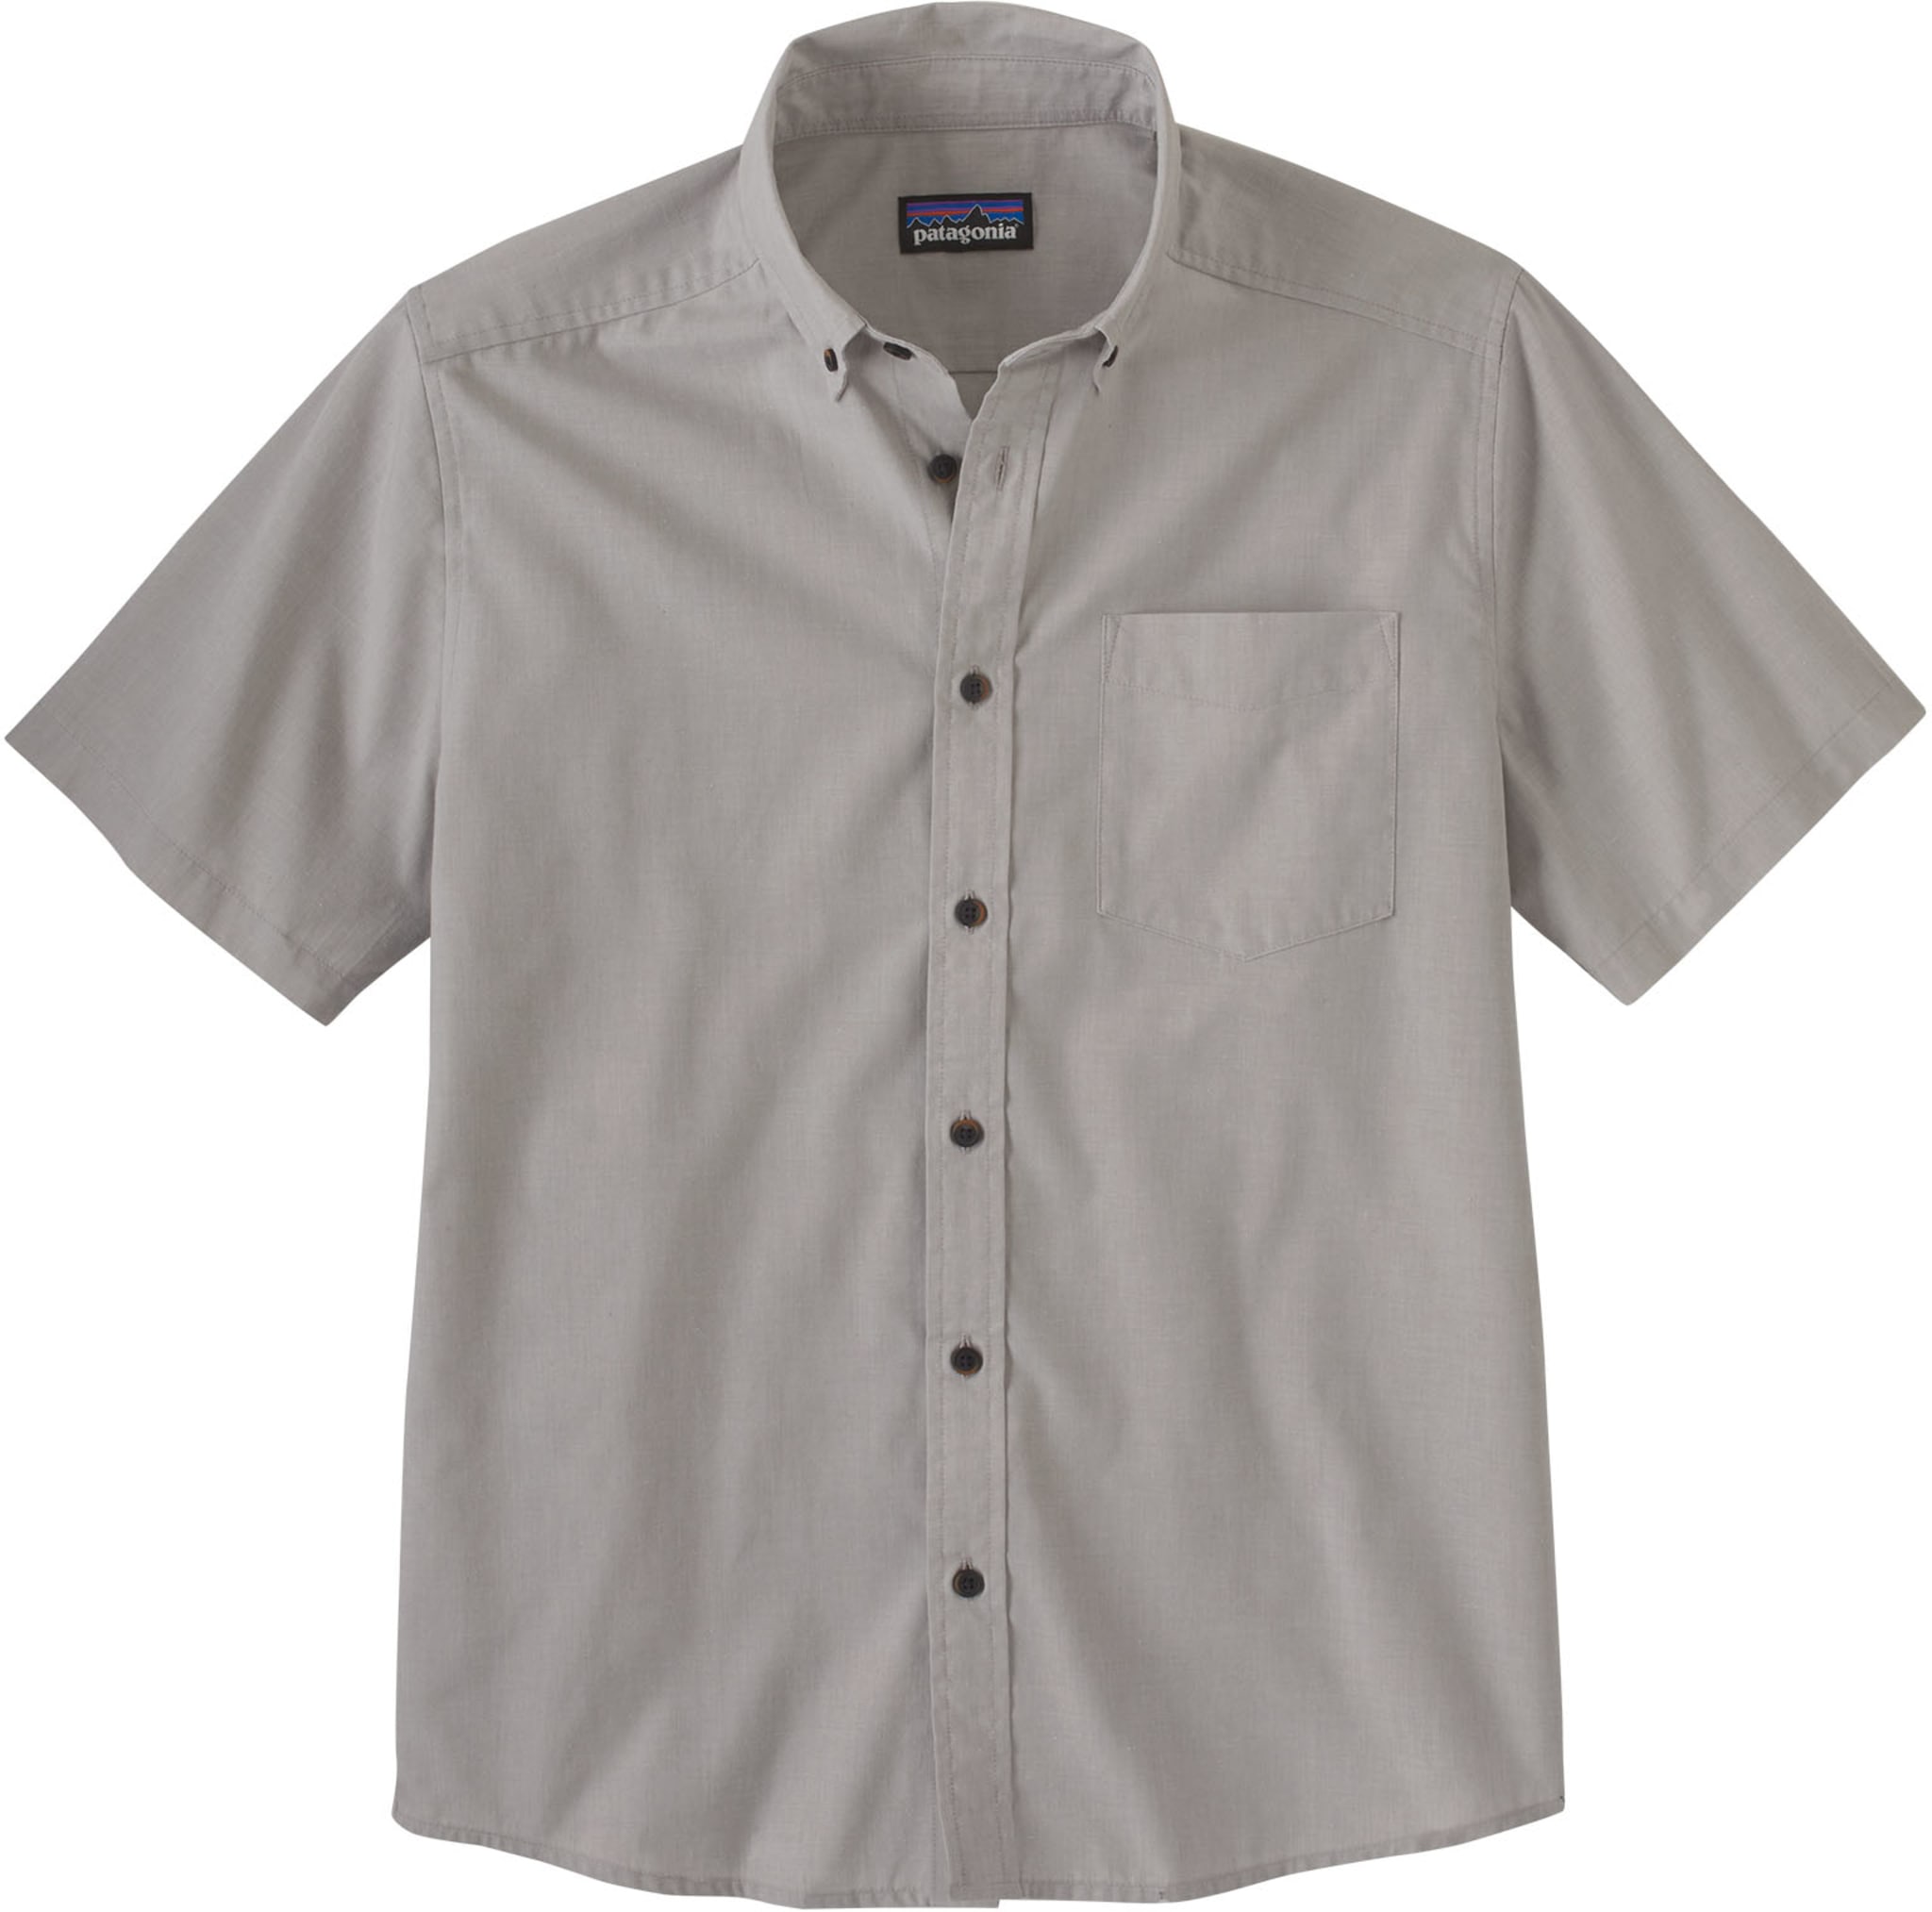 Klassisk button-down skjorte